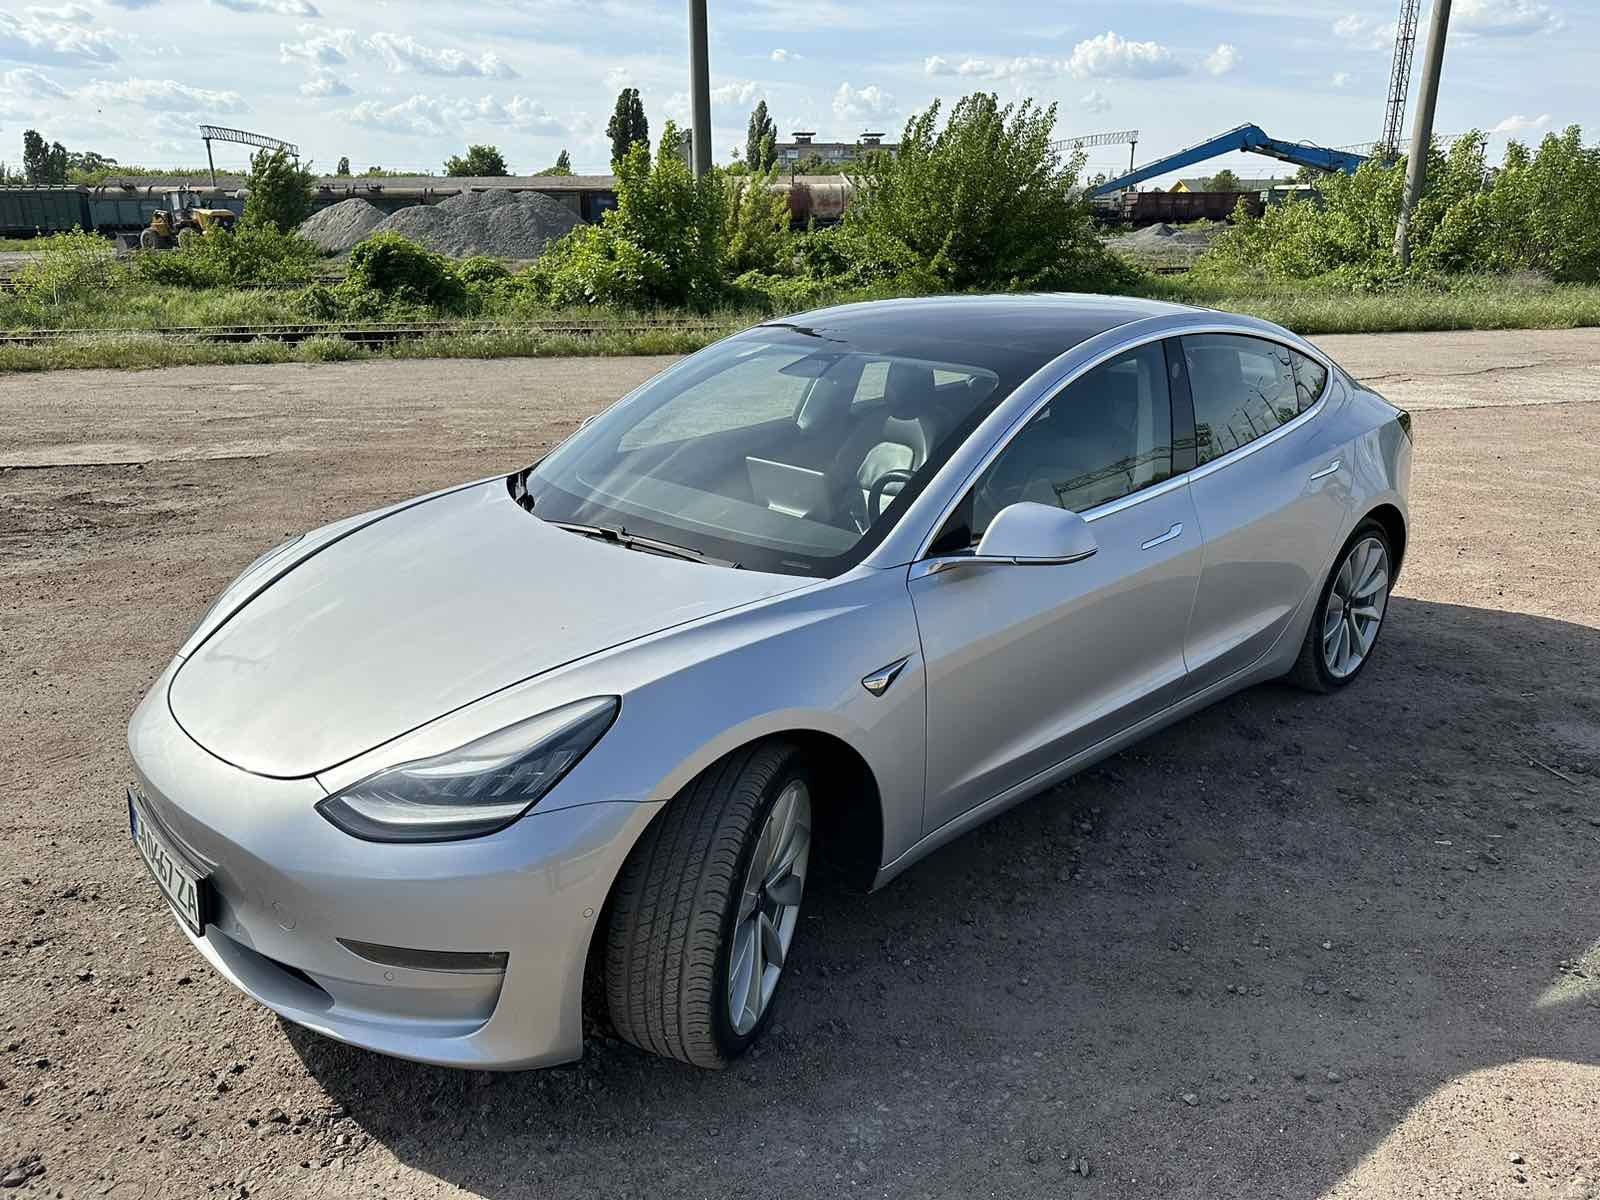 Супер предложение! Tesla model 3, long range 75кВт,.2018